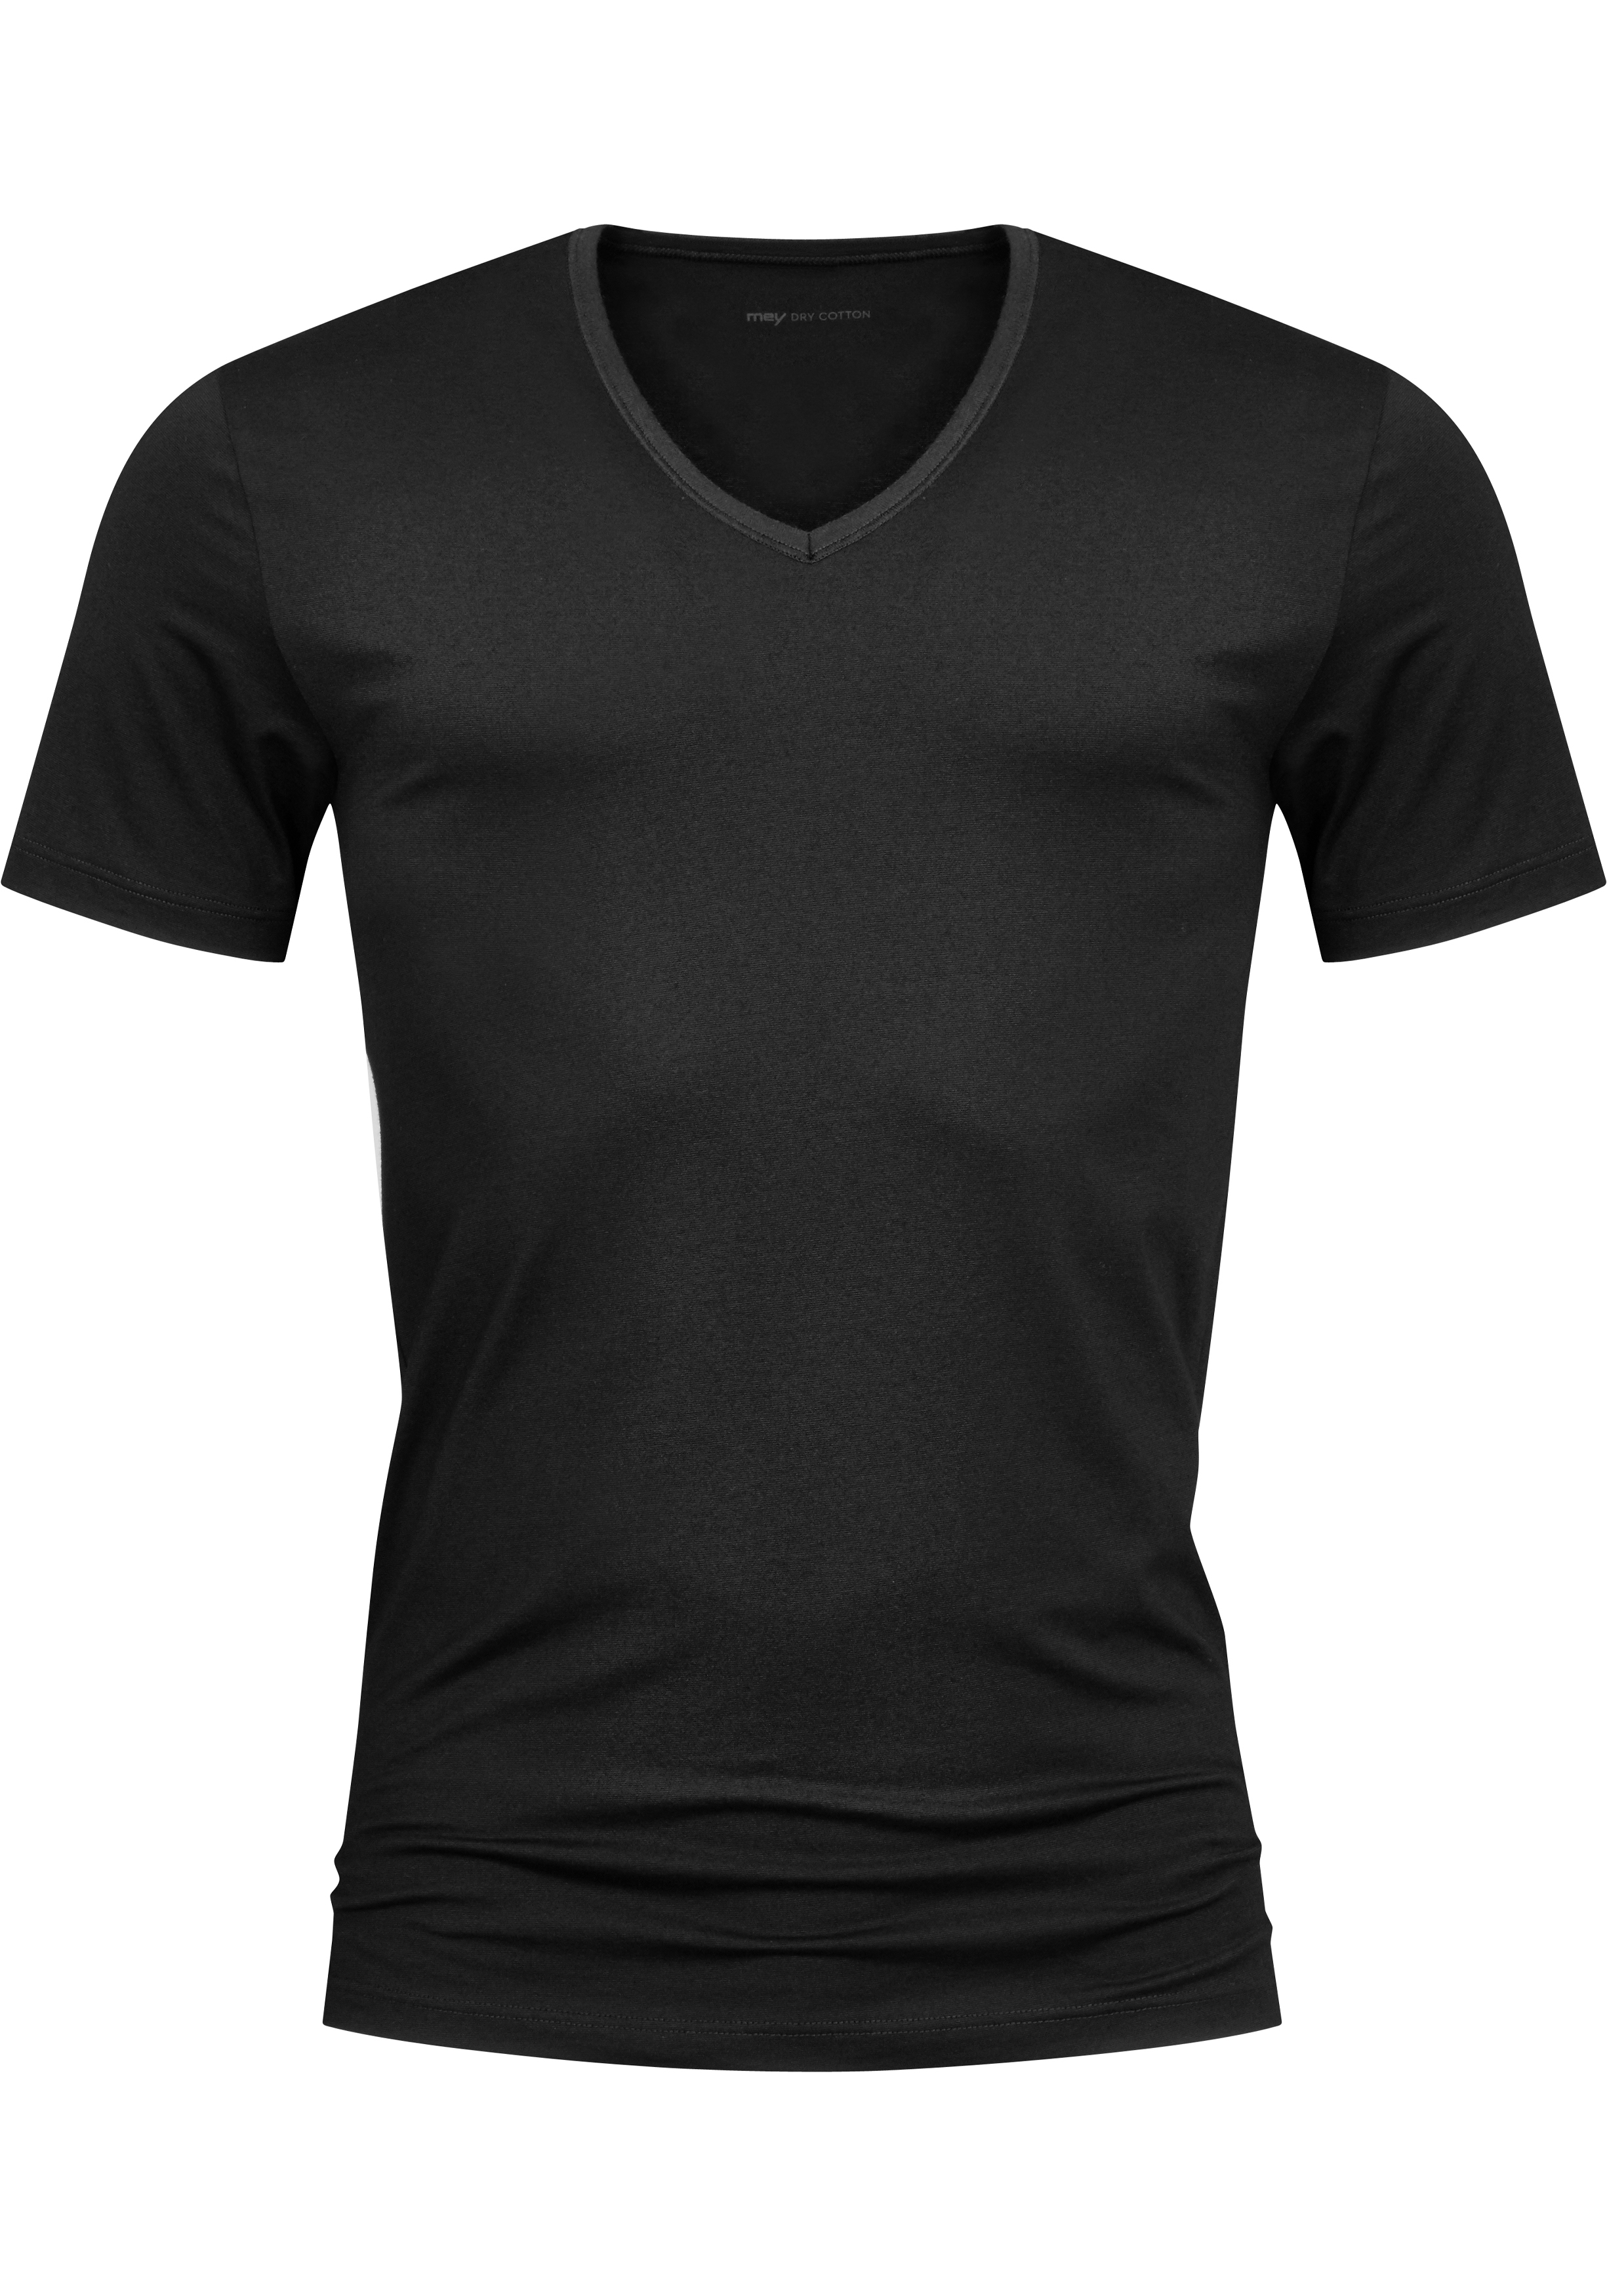 Mey Dry Cotton T-shirt (1-pack), heren T-shirt V-hals, zwart